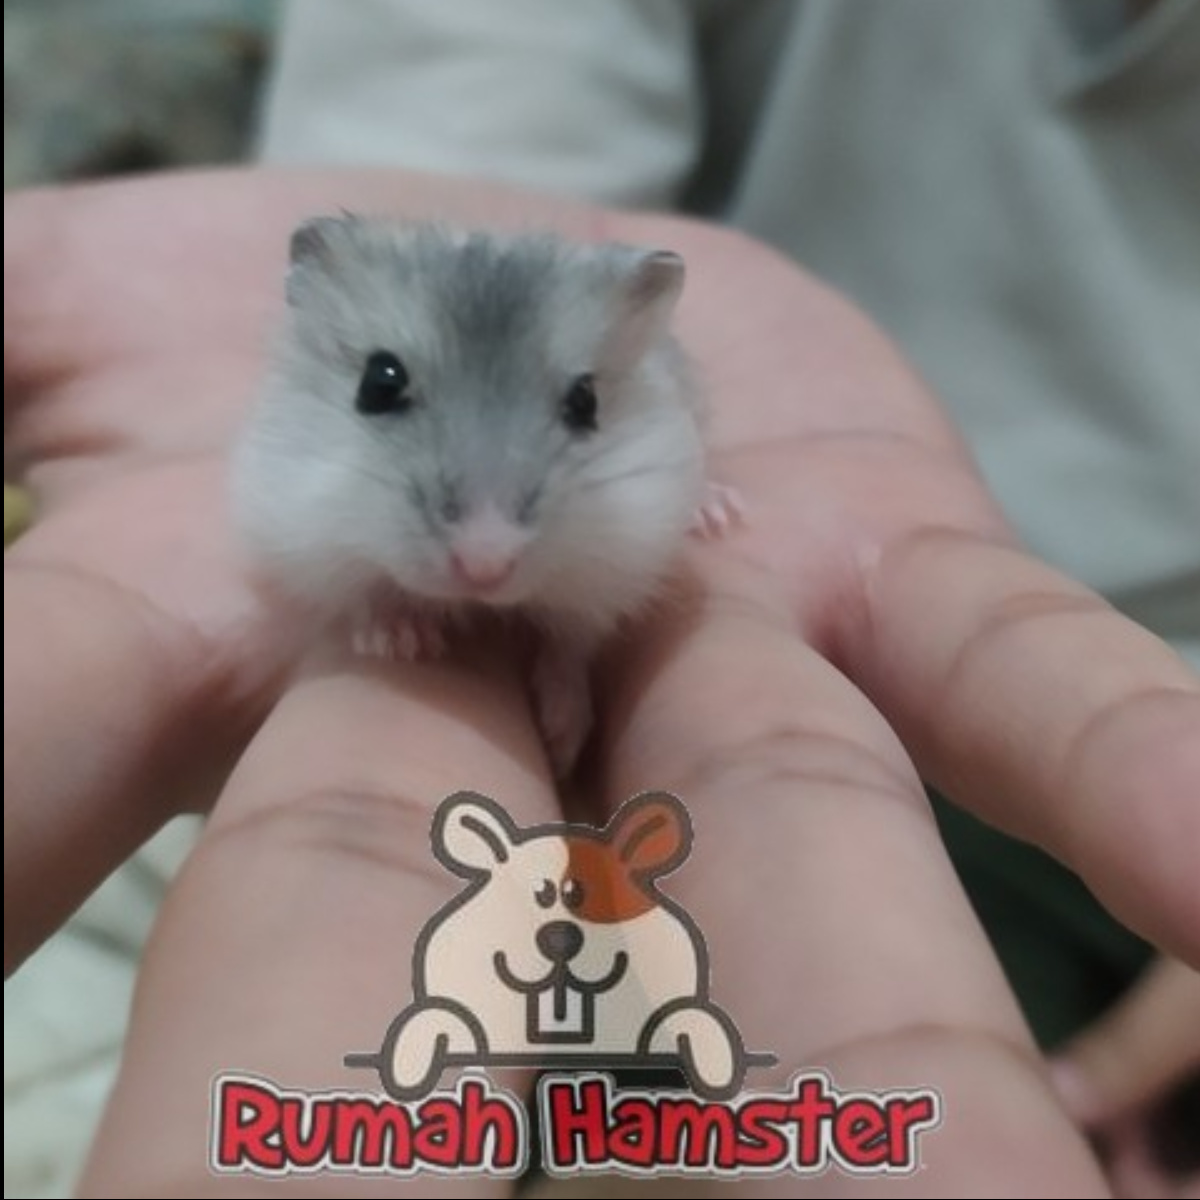 Hamster Winter White Pear